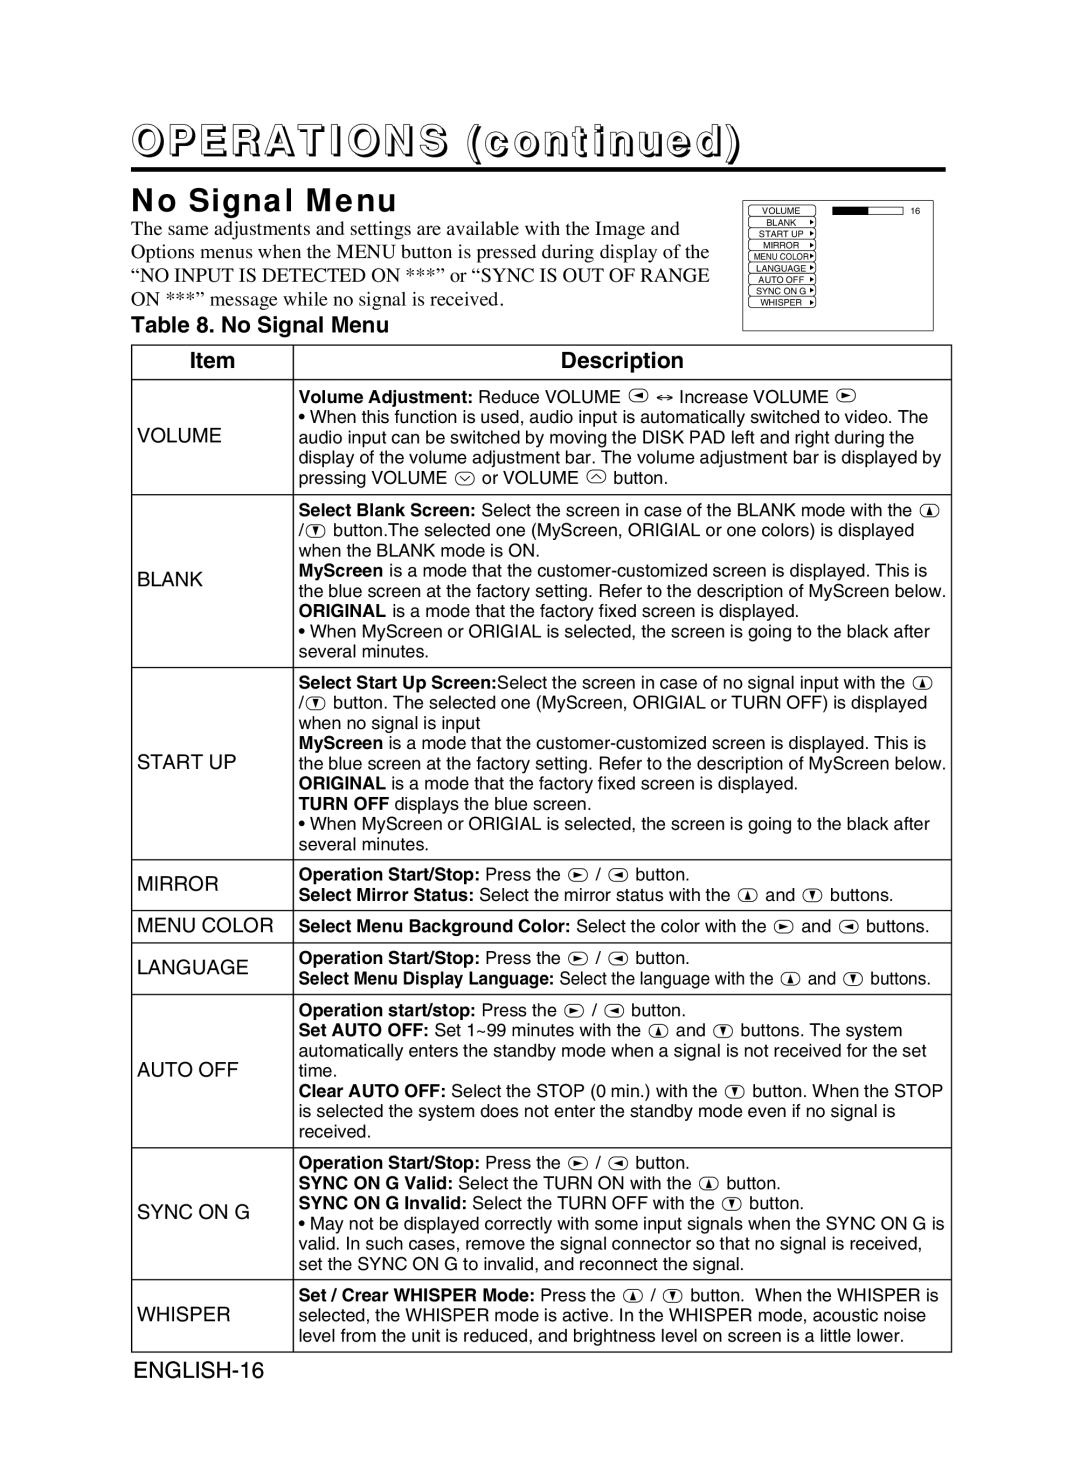 Proxima ASA DP6870 manual No Signal Menu, OPERATIONS continued, Description, ENGLISH-16 